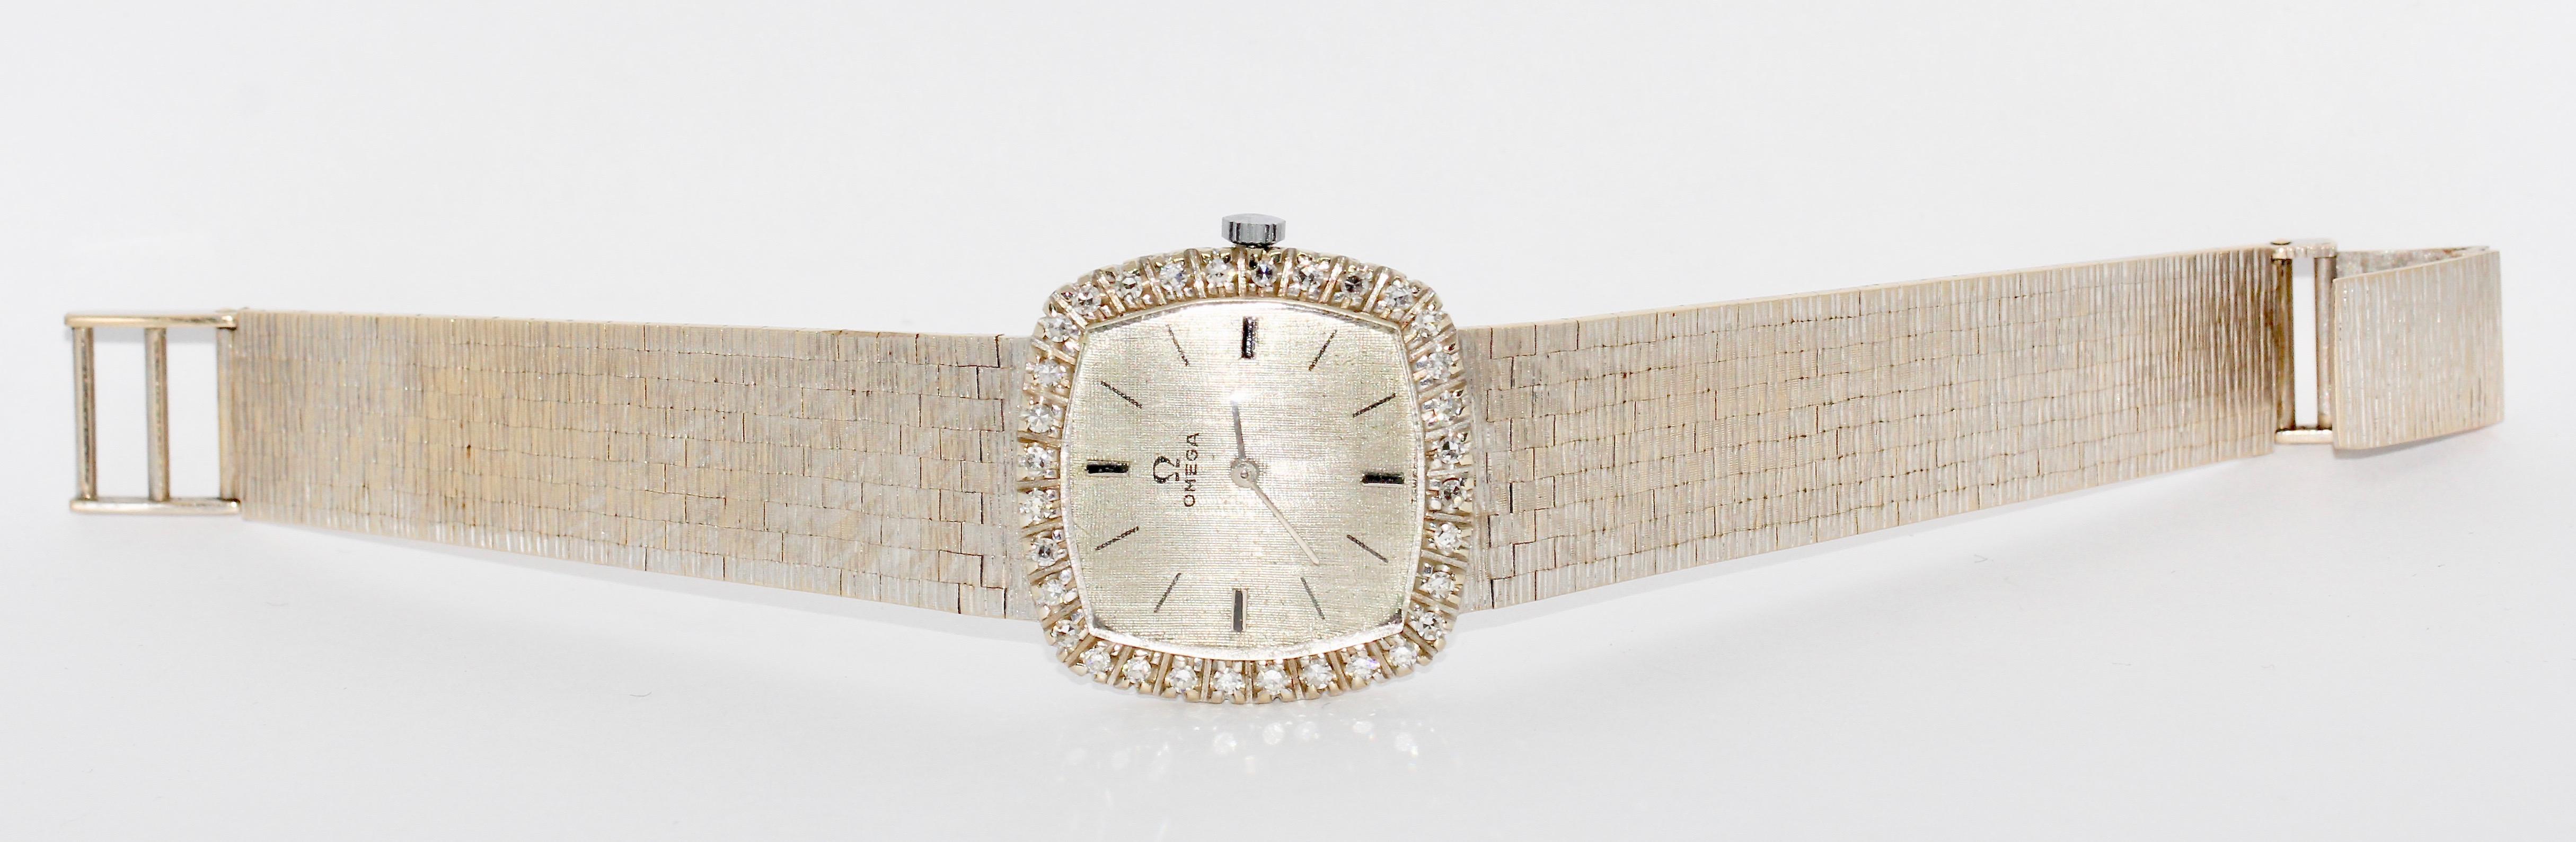 Montre-bracelet Omega pour dames, or blanc 18 carats et diamants, à remontage manuel.

Certificat d'authenticité inclus.